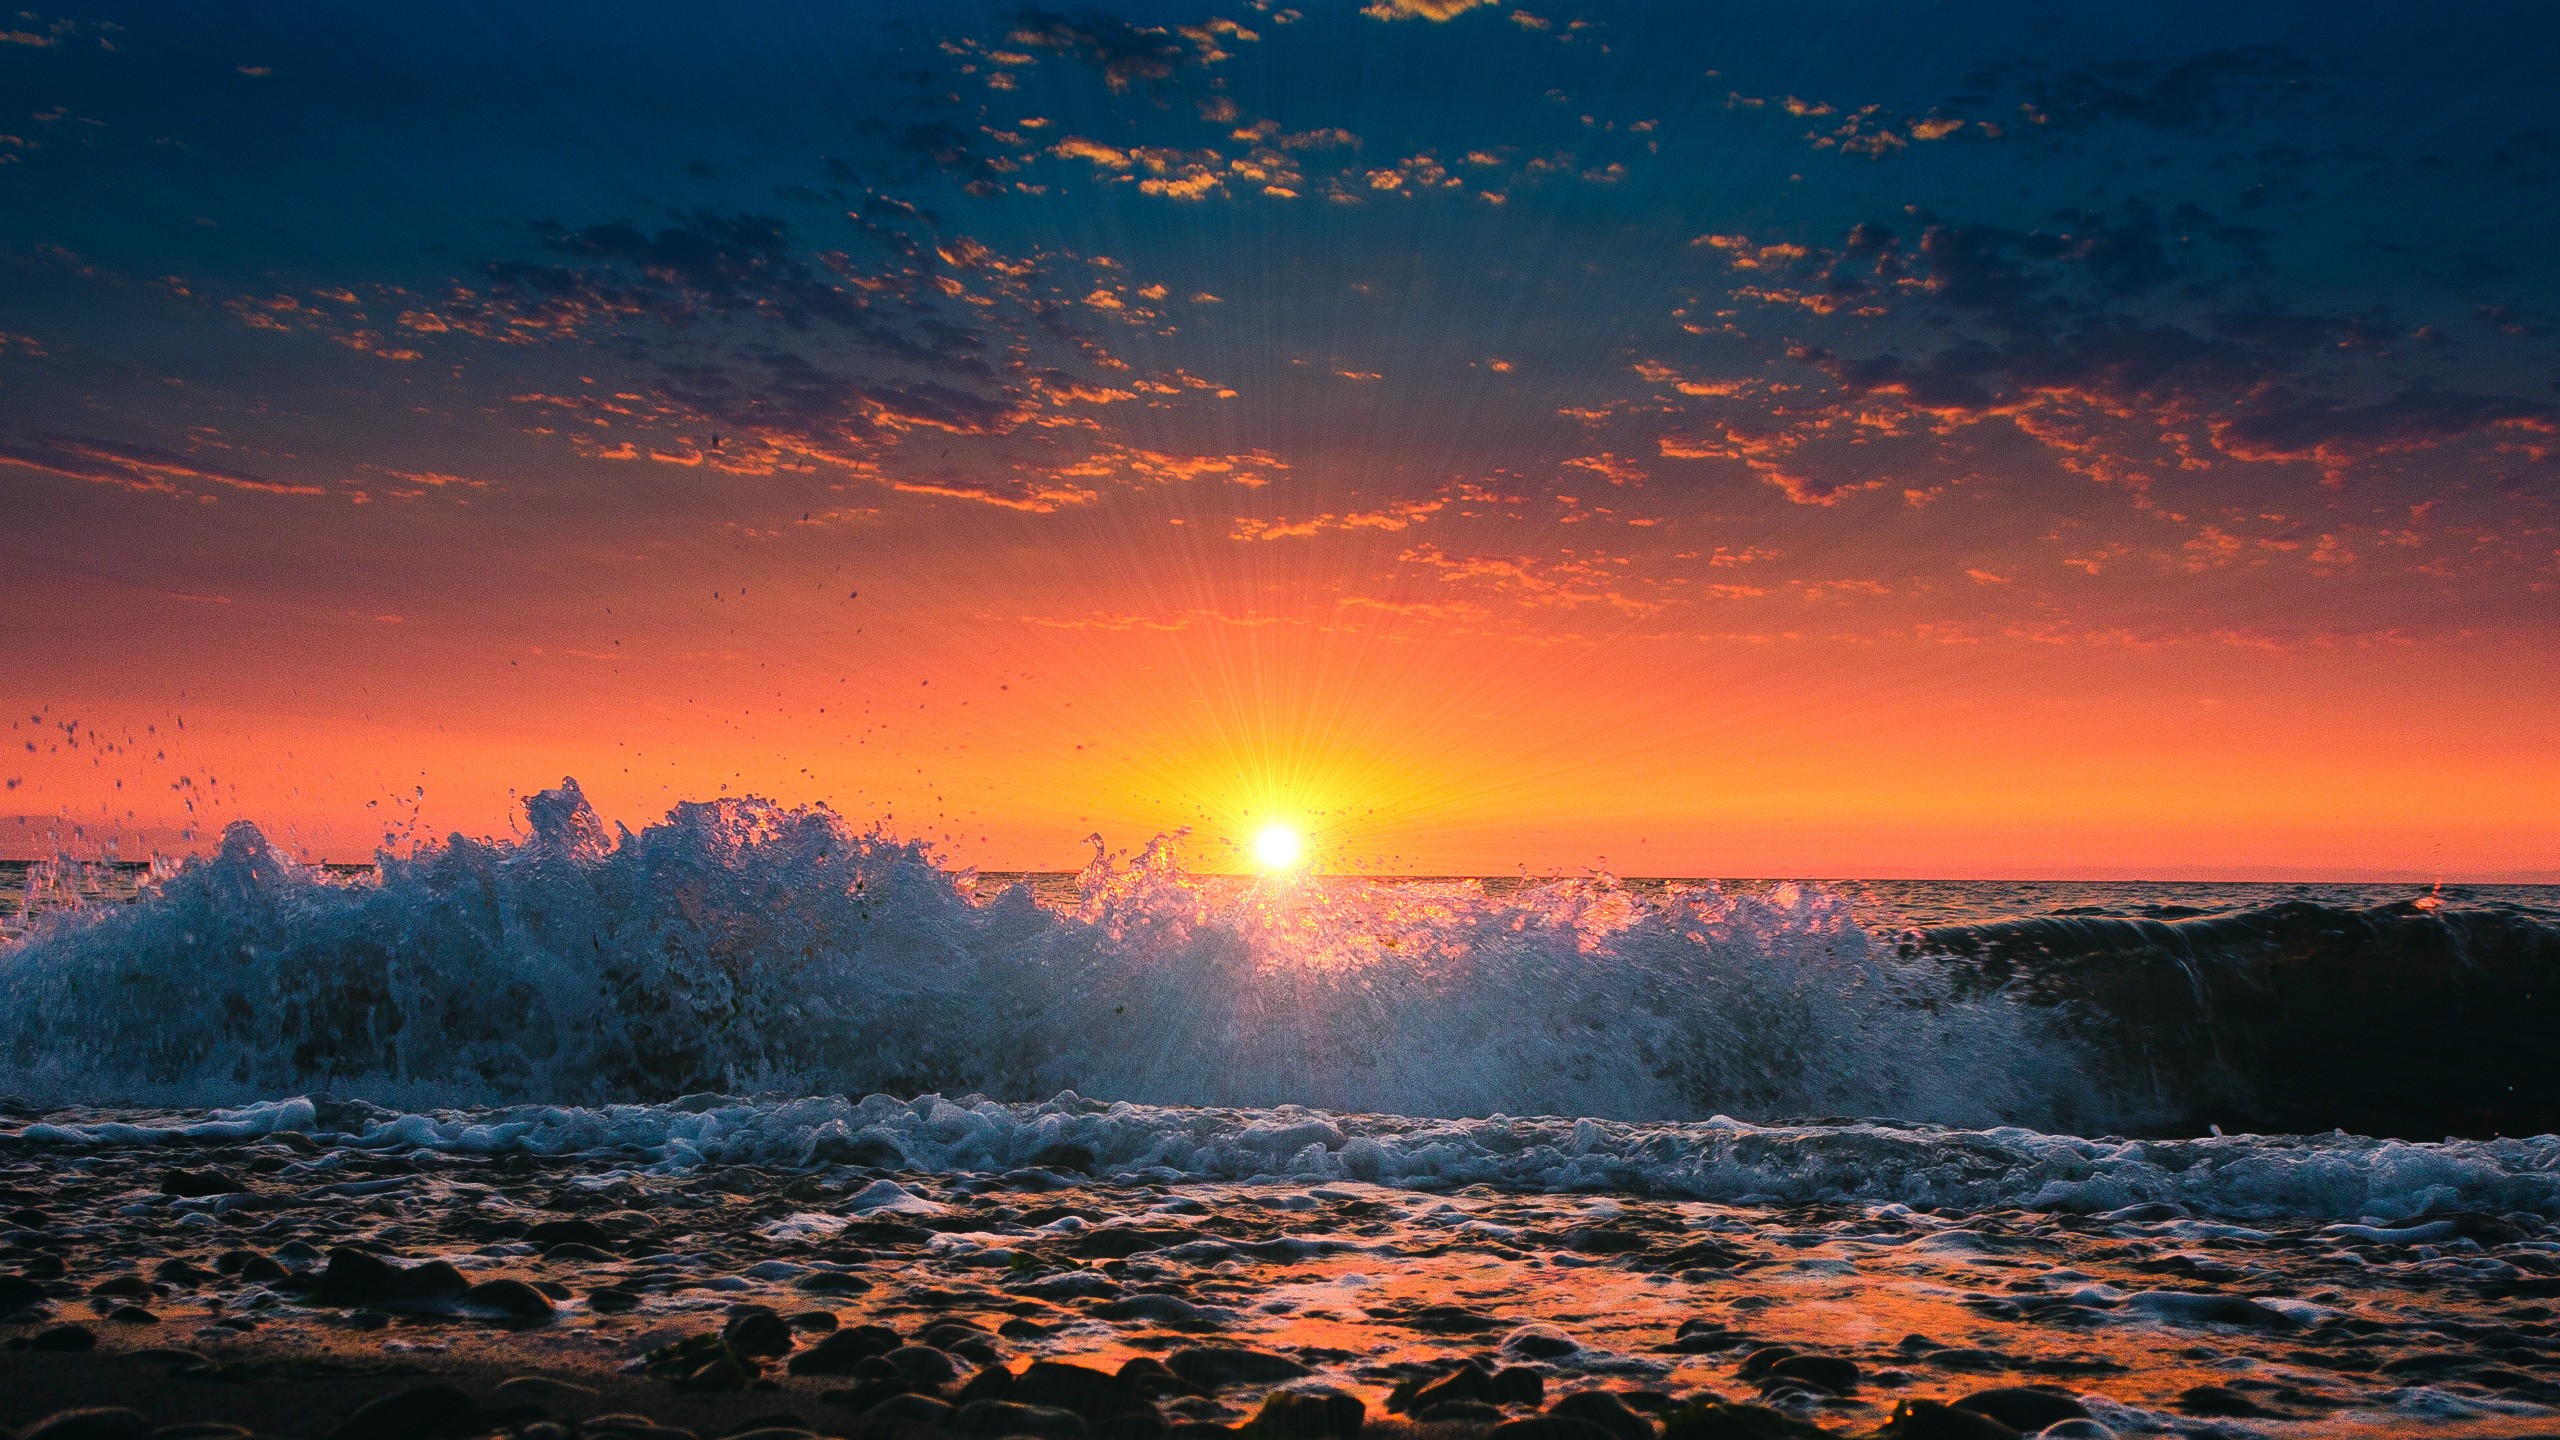 ocean wave sunset wallpaper